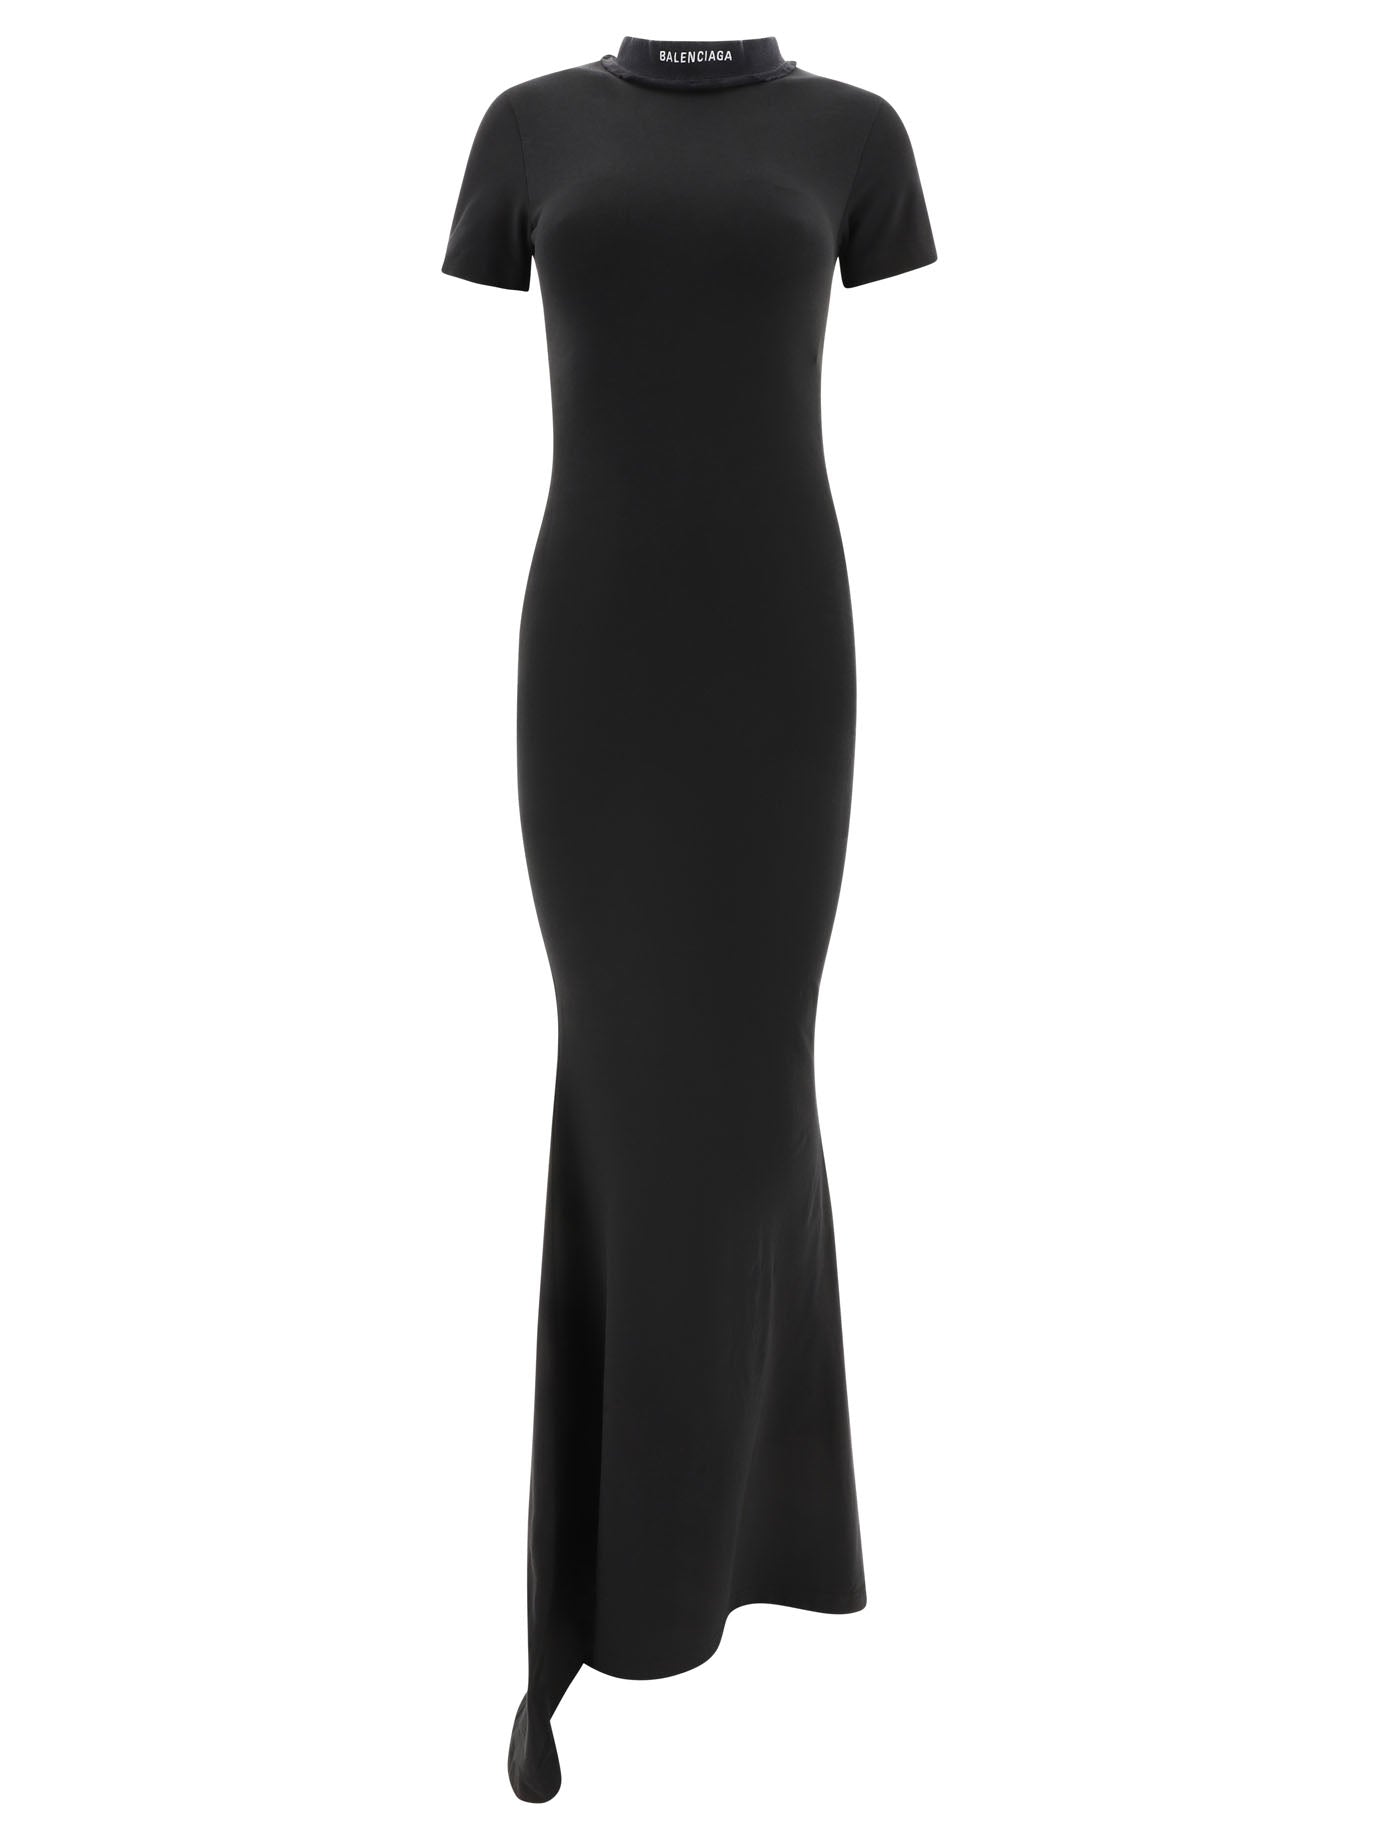 Balenciaga Printed Ribbed Knit Dress Black  SS21  US